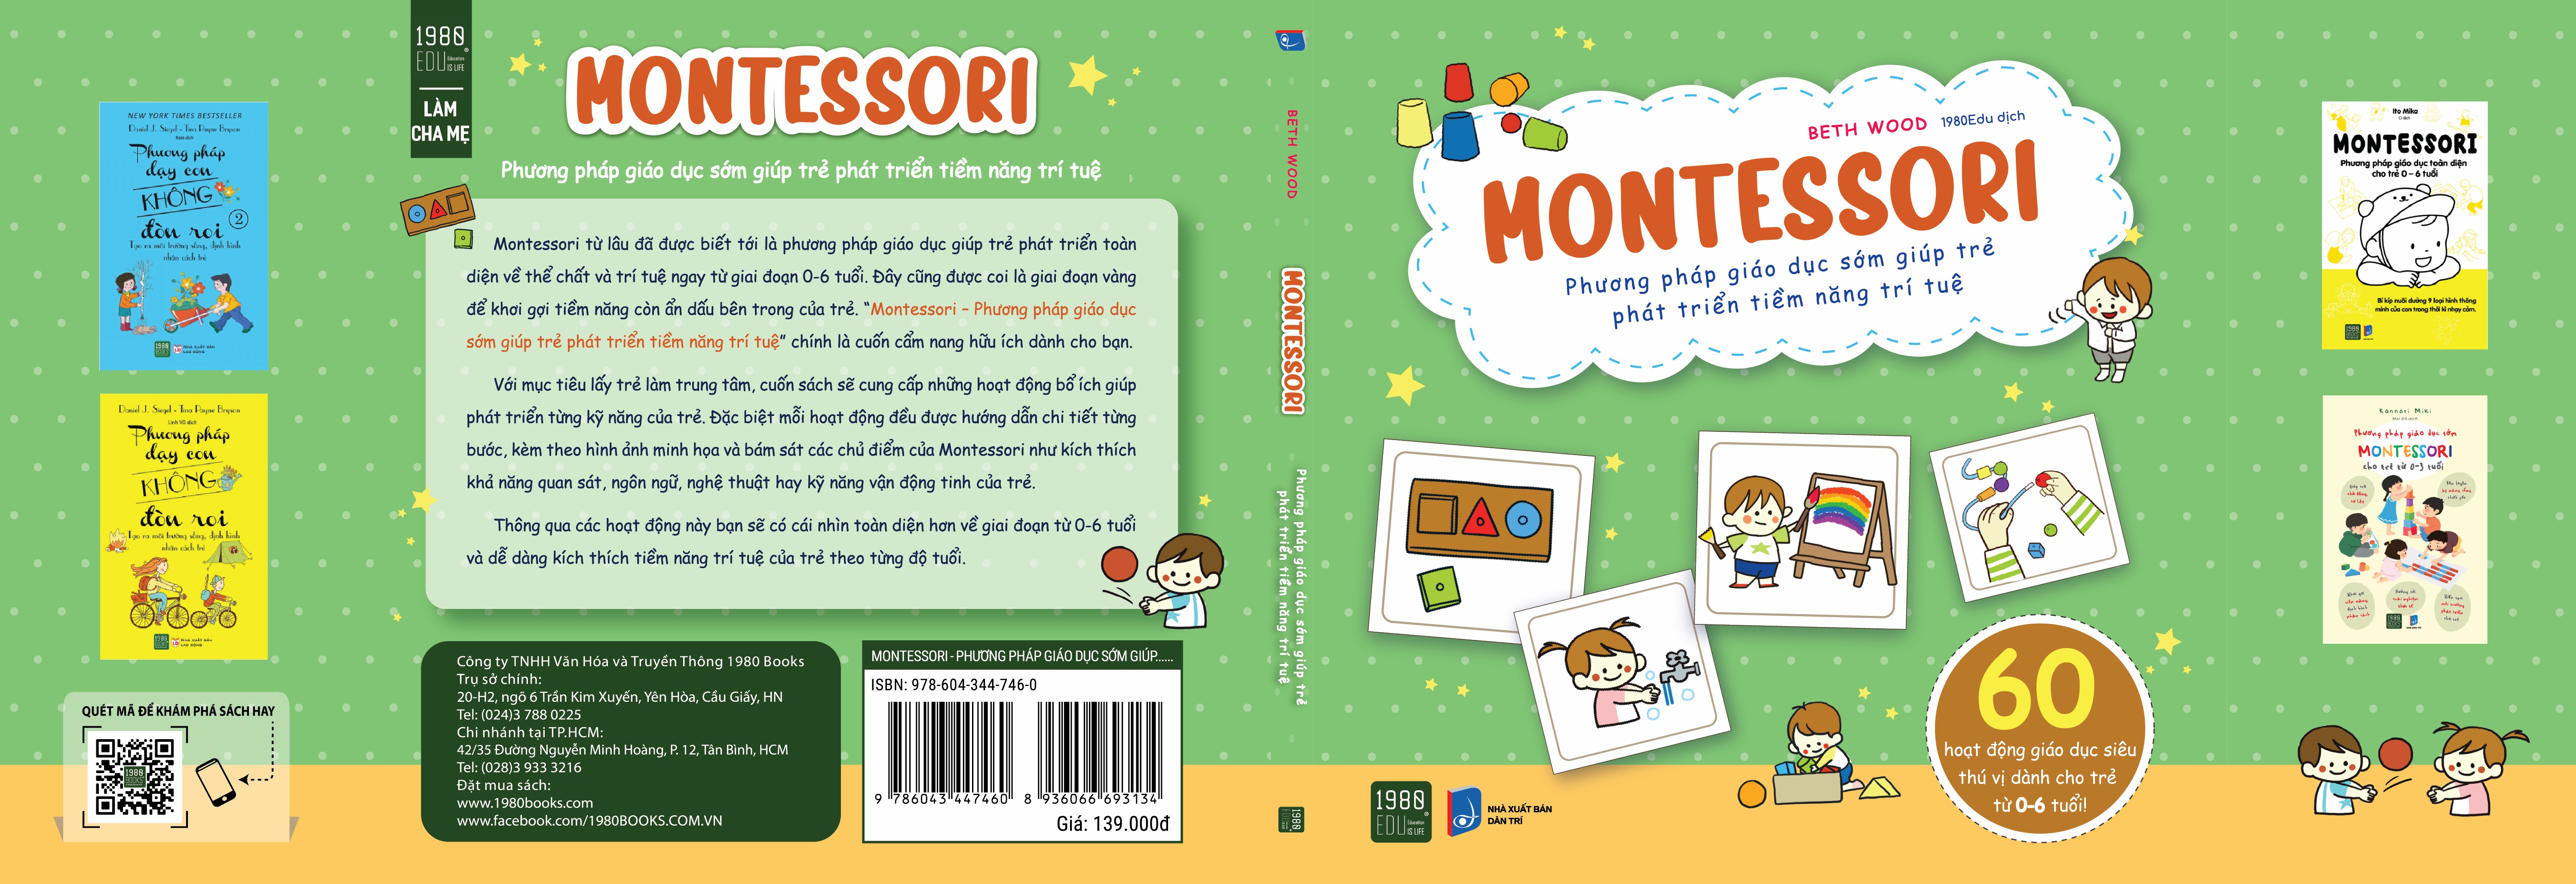 Montessori: Phương pháp giáo dục sớm giúp trẻ phát triển tiềm năng trí tuệ -  Beth Wood